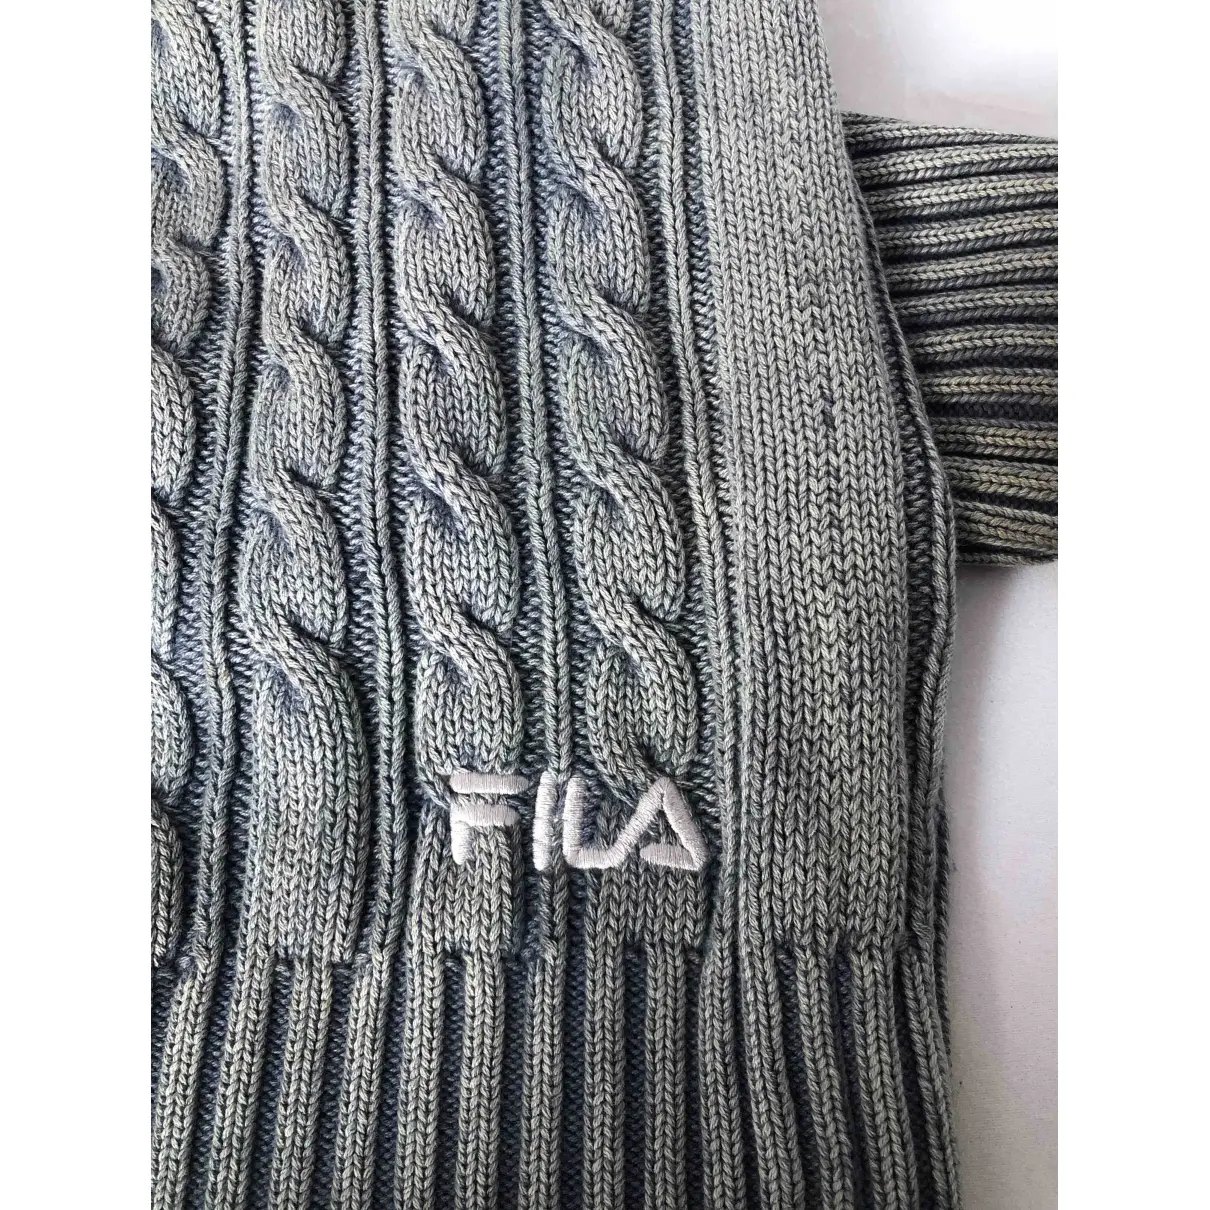 Luxury Fila Knitwear & Sweatshirts Men